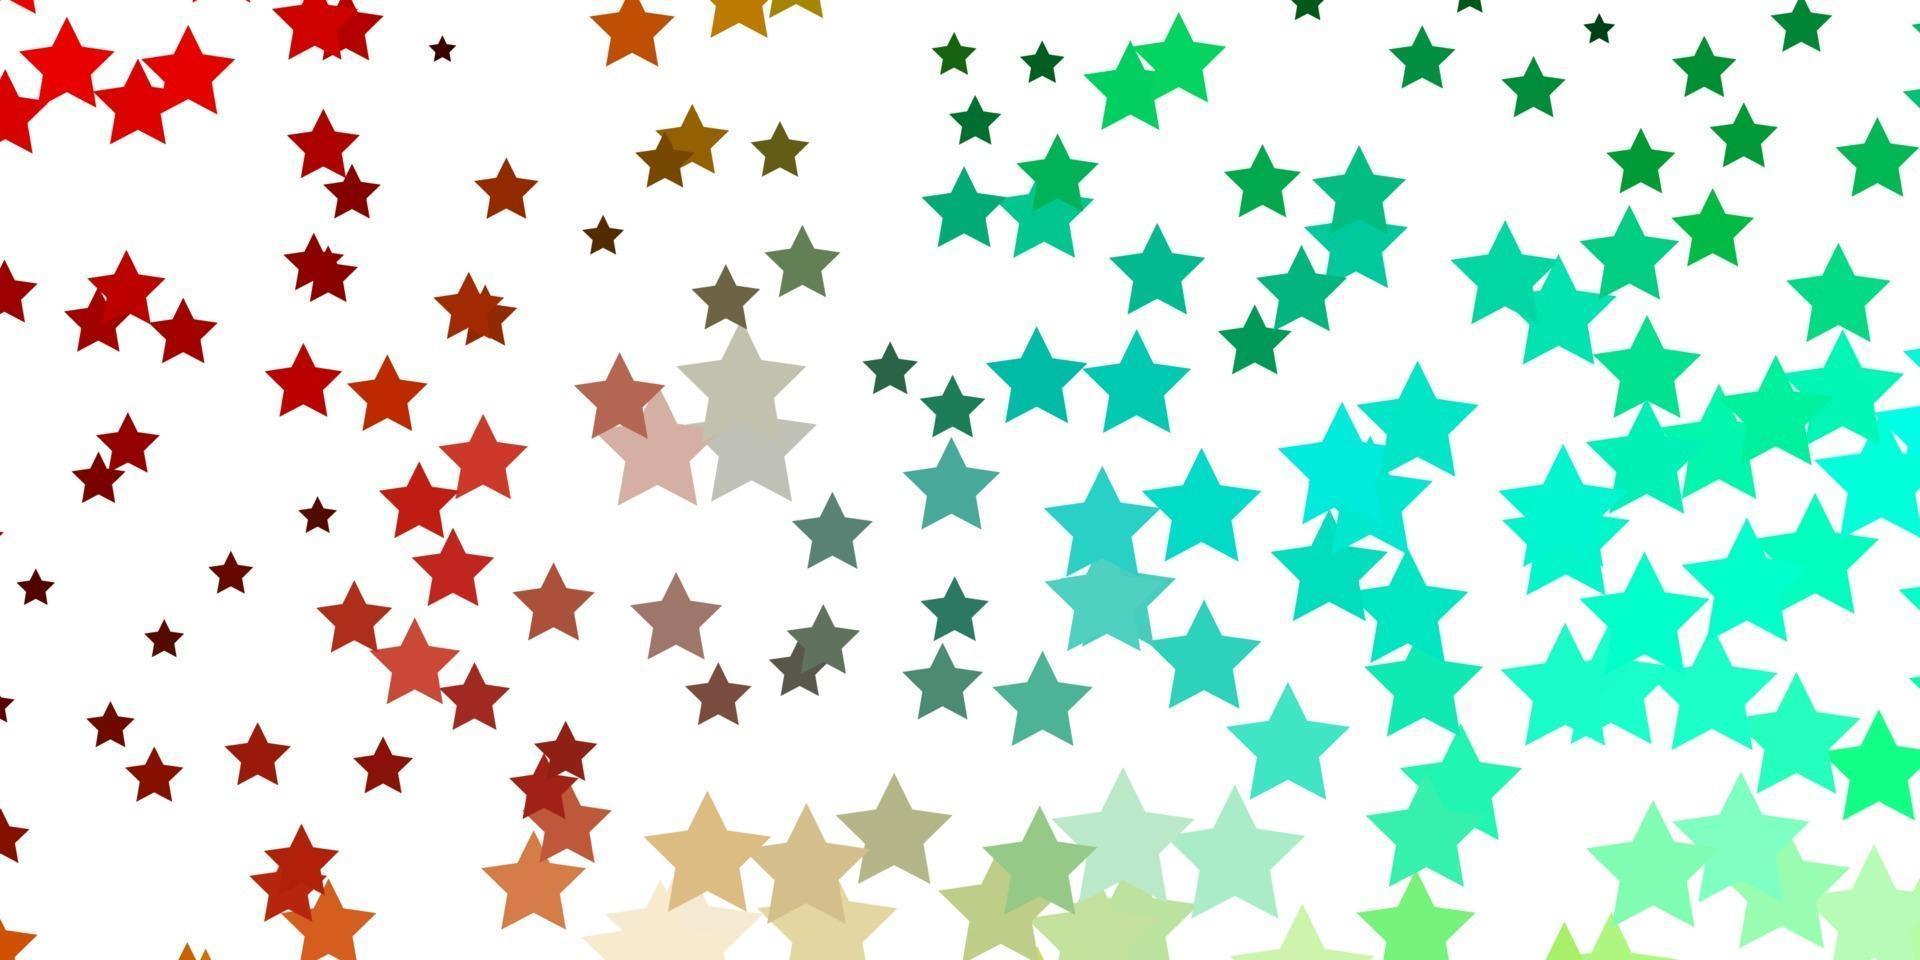 fond de vecteur multicolore clair avec de petites et grandes étoiles.